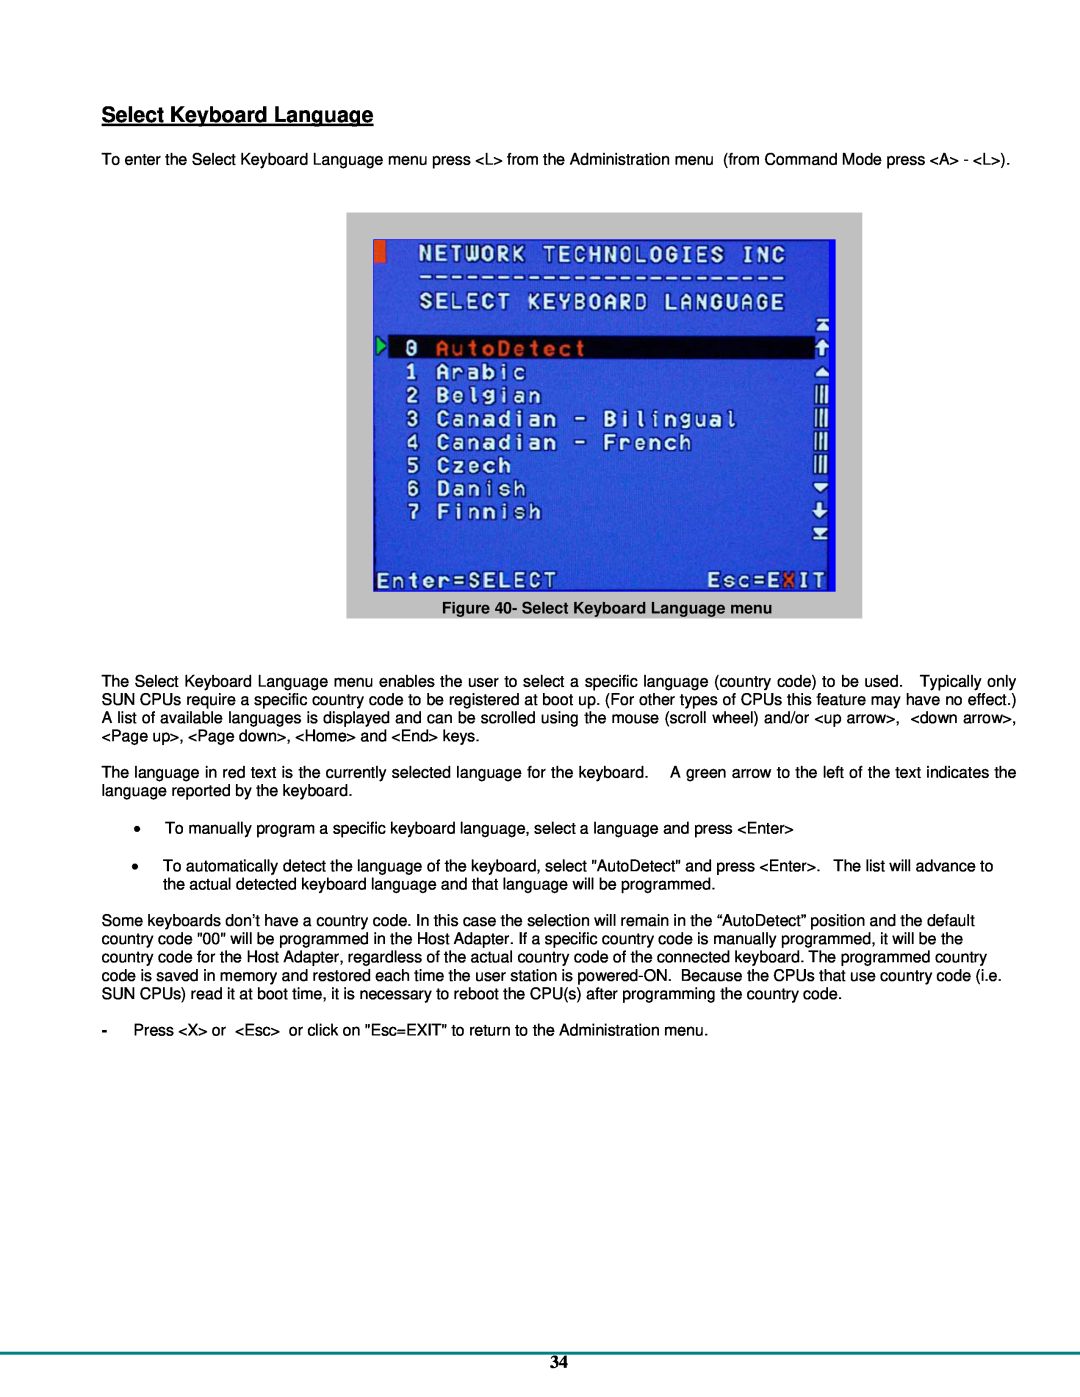 Network Technologies CAT5 operation manual Select Keyboard Language menu 